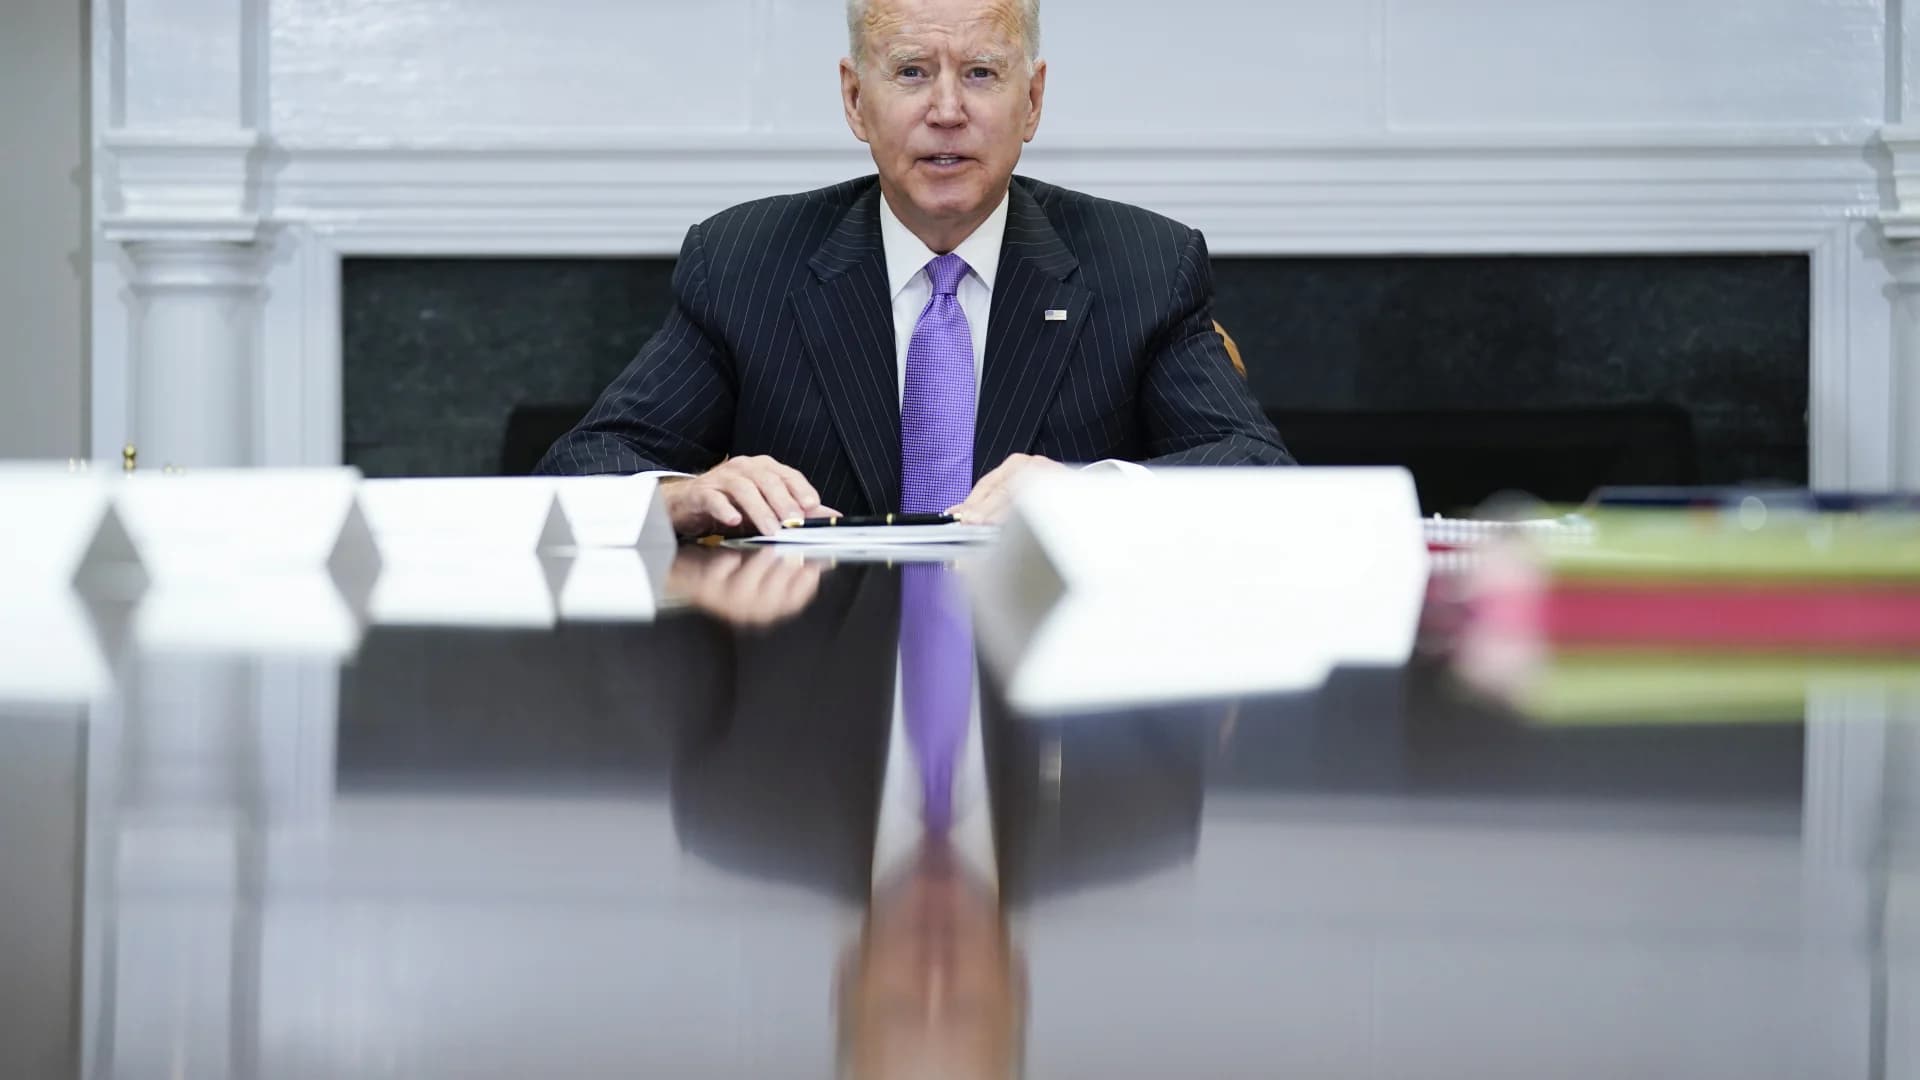 President Biden pushes effort to combat rising tide of violent crime